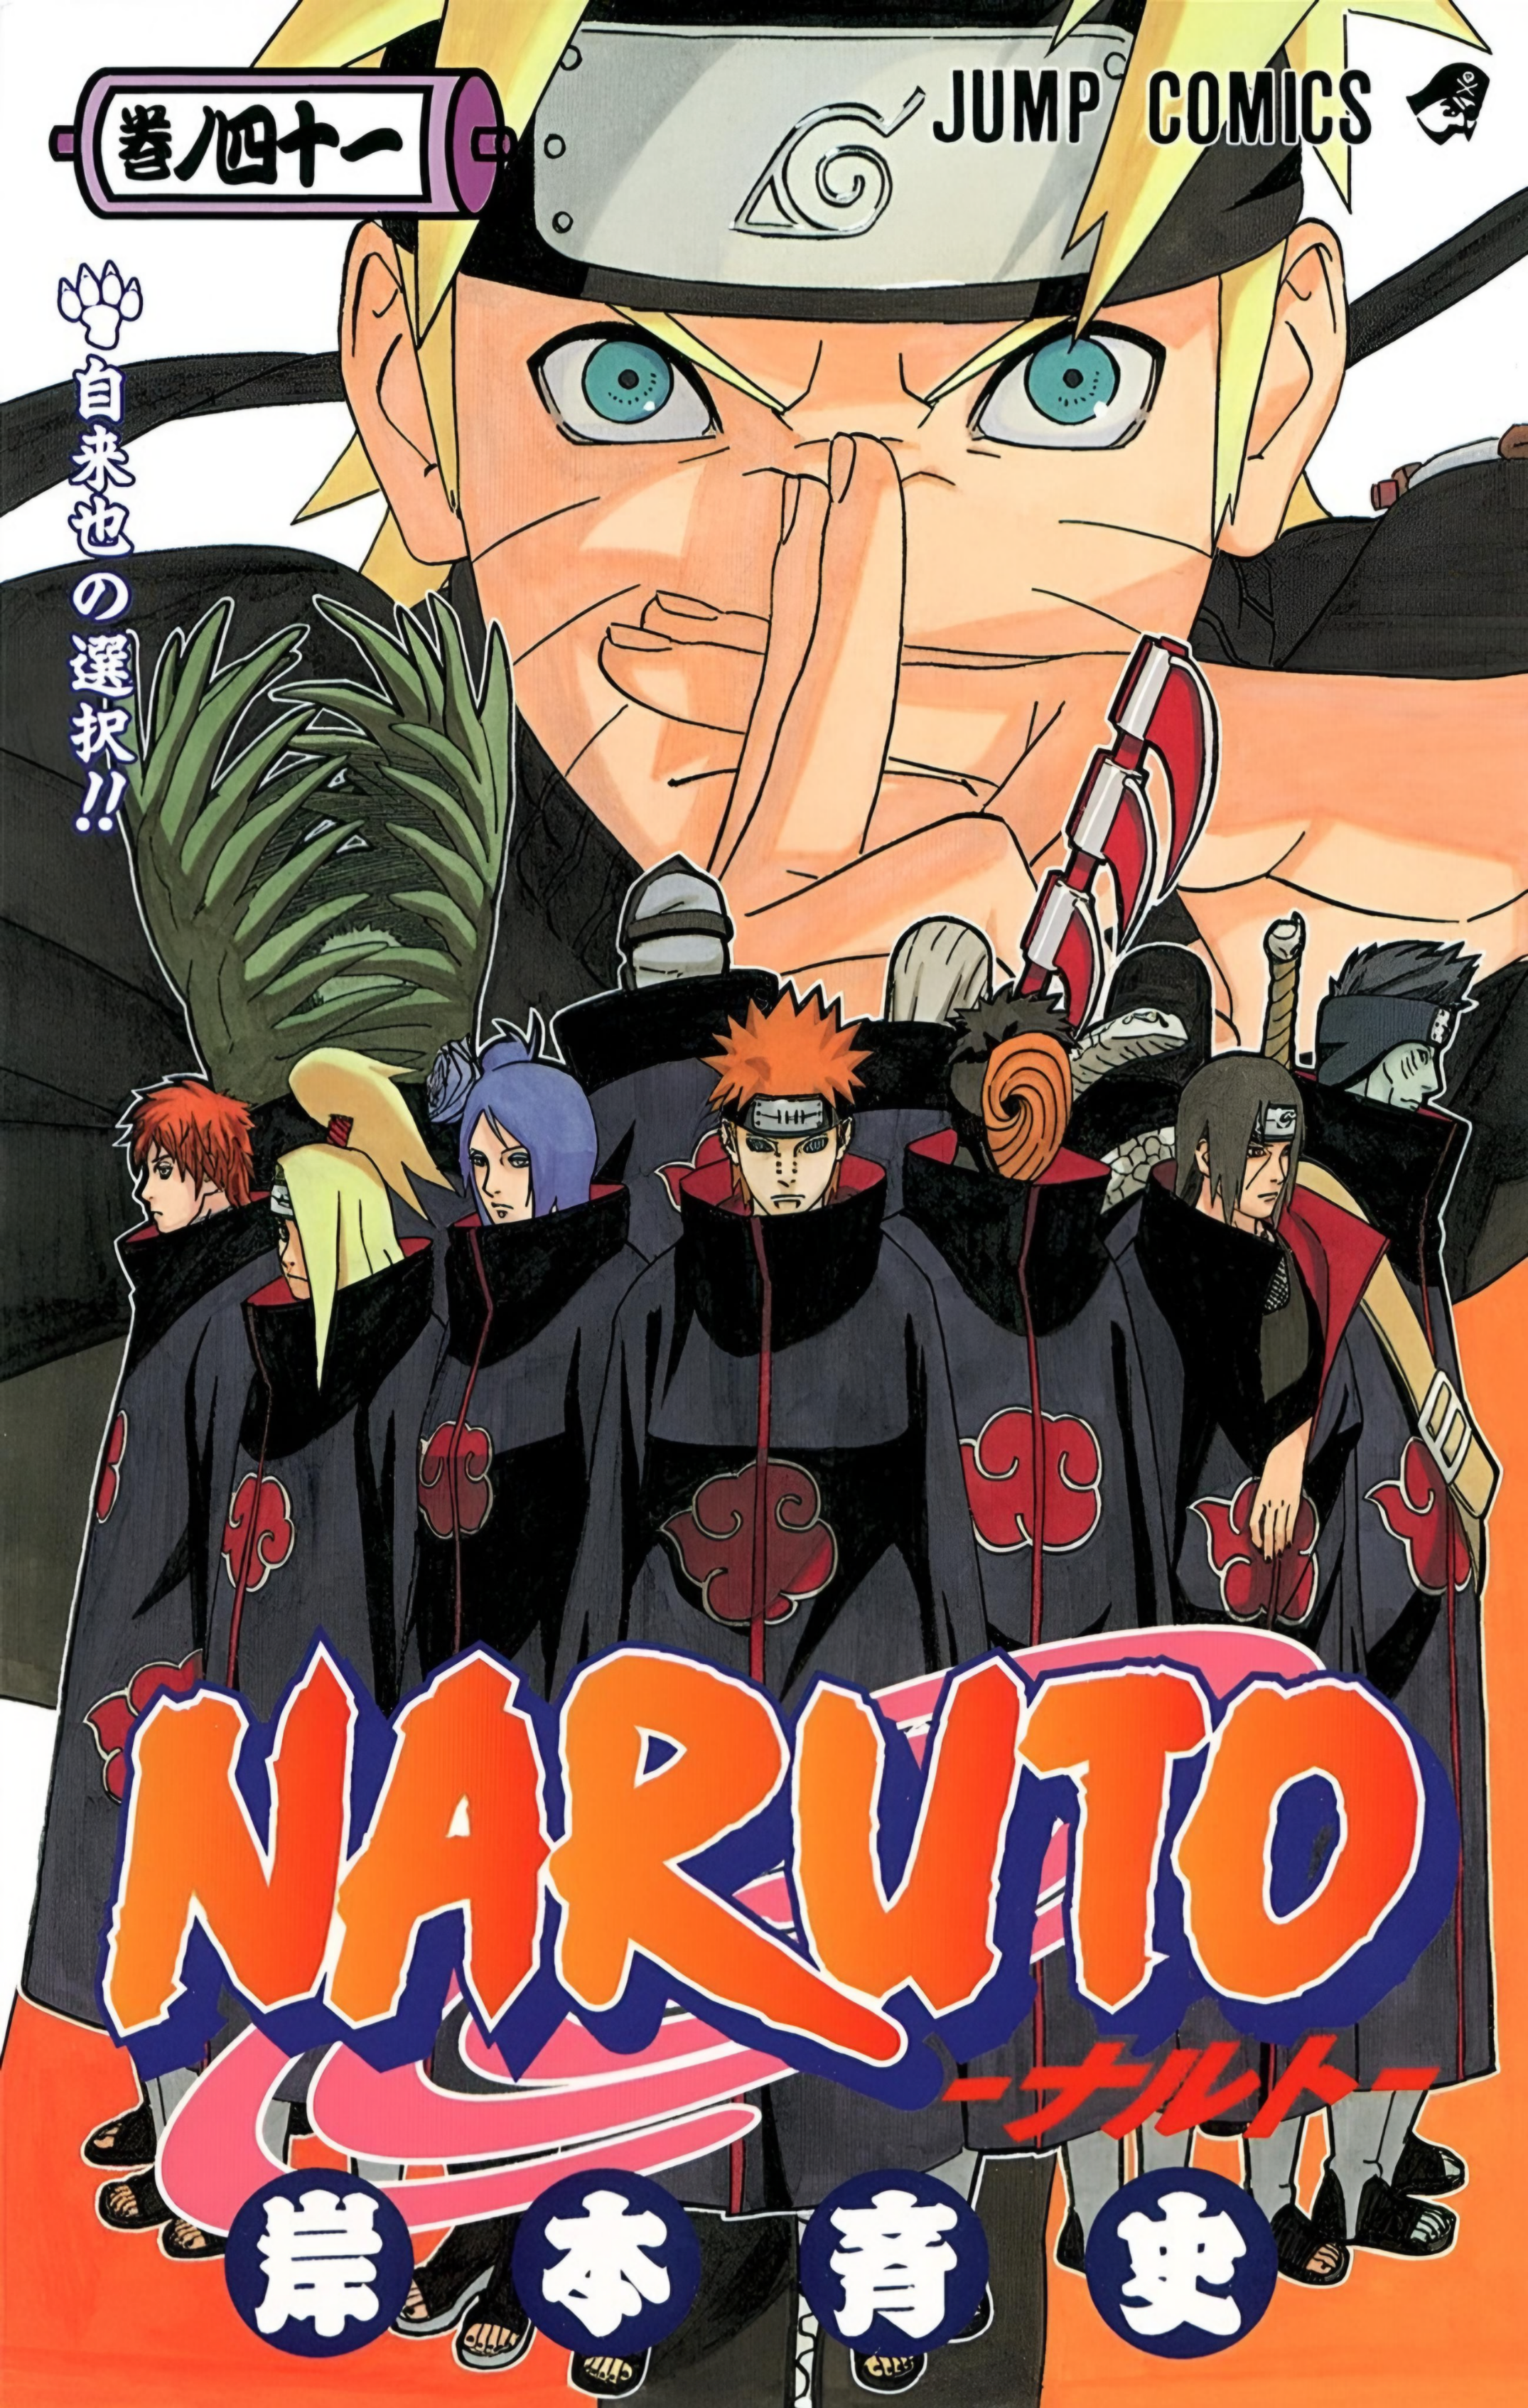 Naruto Classico – Ep 41. Confronto de rivais!!! Os corações das garotas em  estado sério!, Naruto Classico – Ep 41. Confronto de rivais!!! Os corações  das garotas em estado sério!, By Son Animes